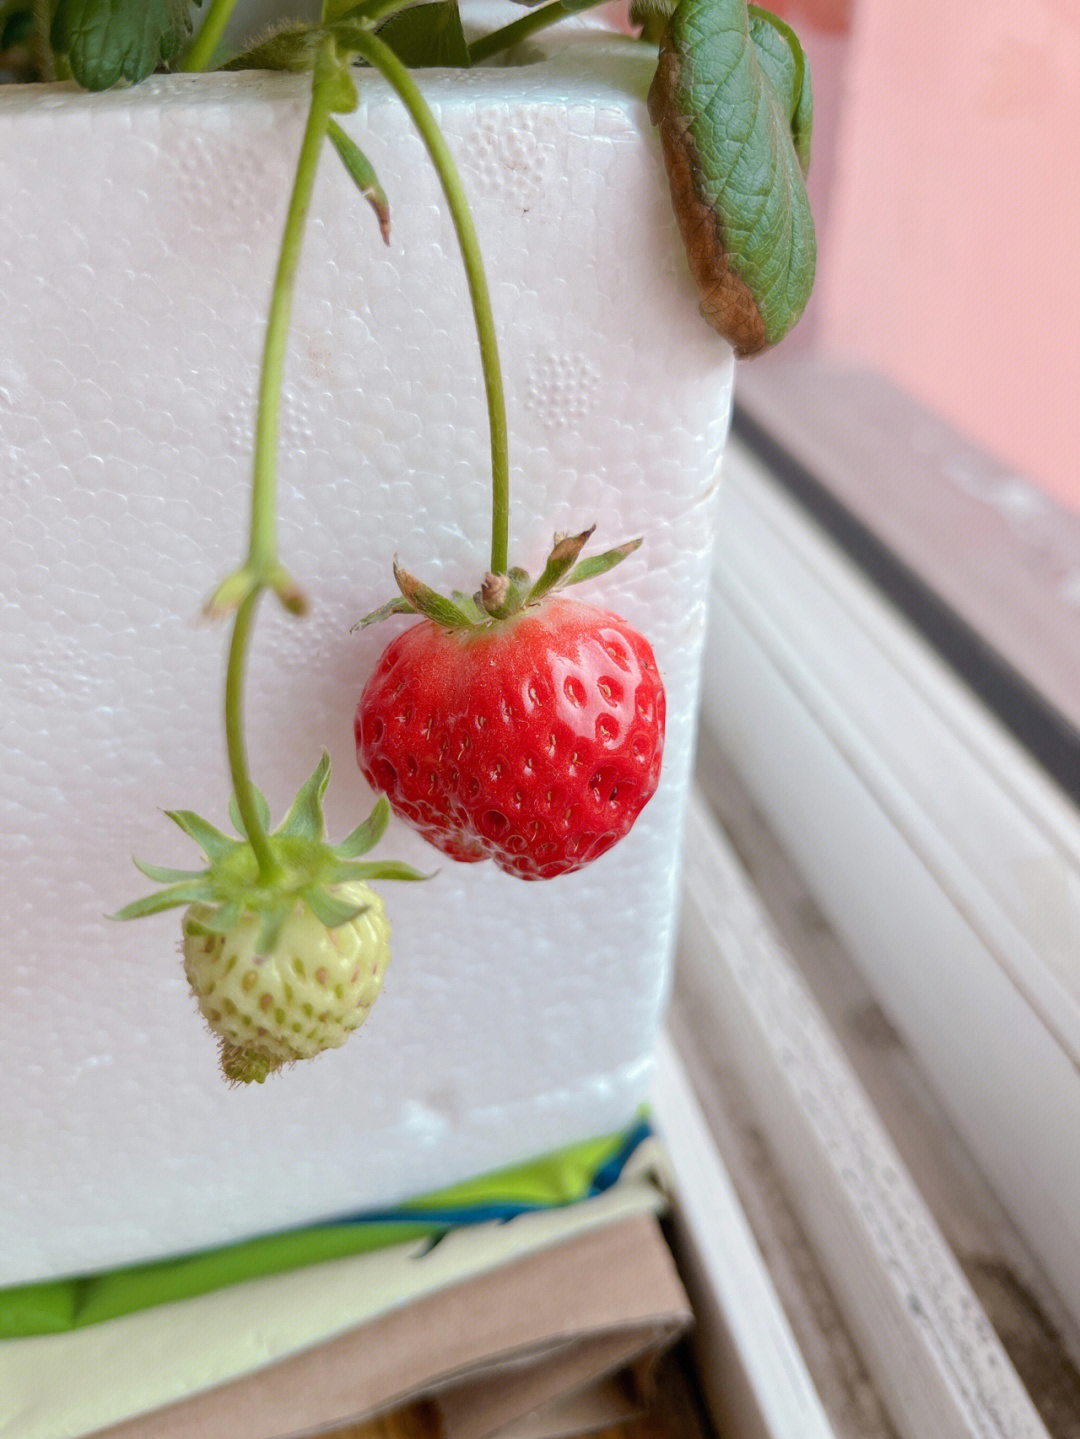 一颗小草莓的成熟过程